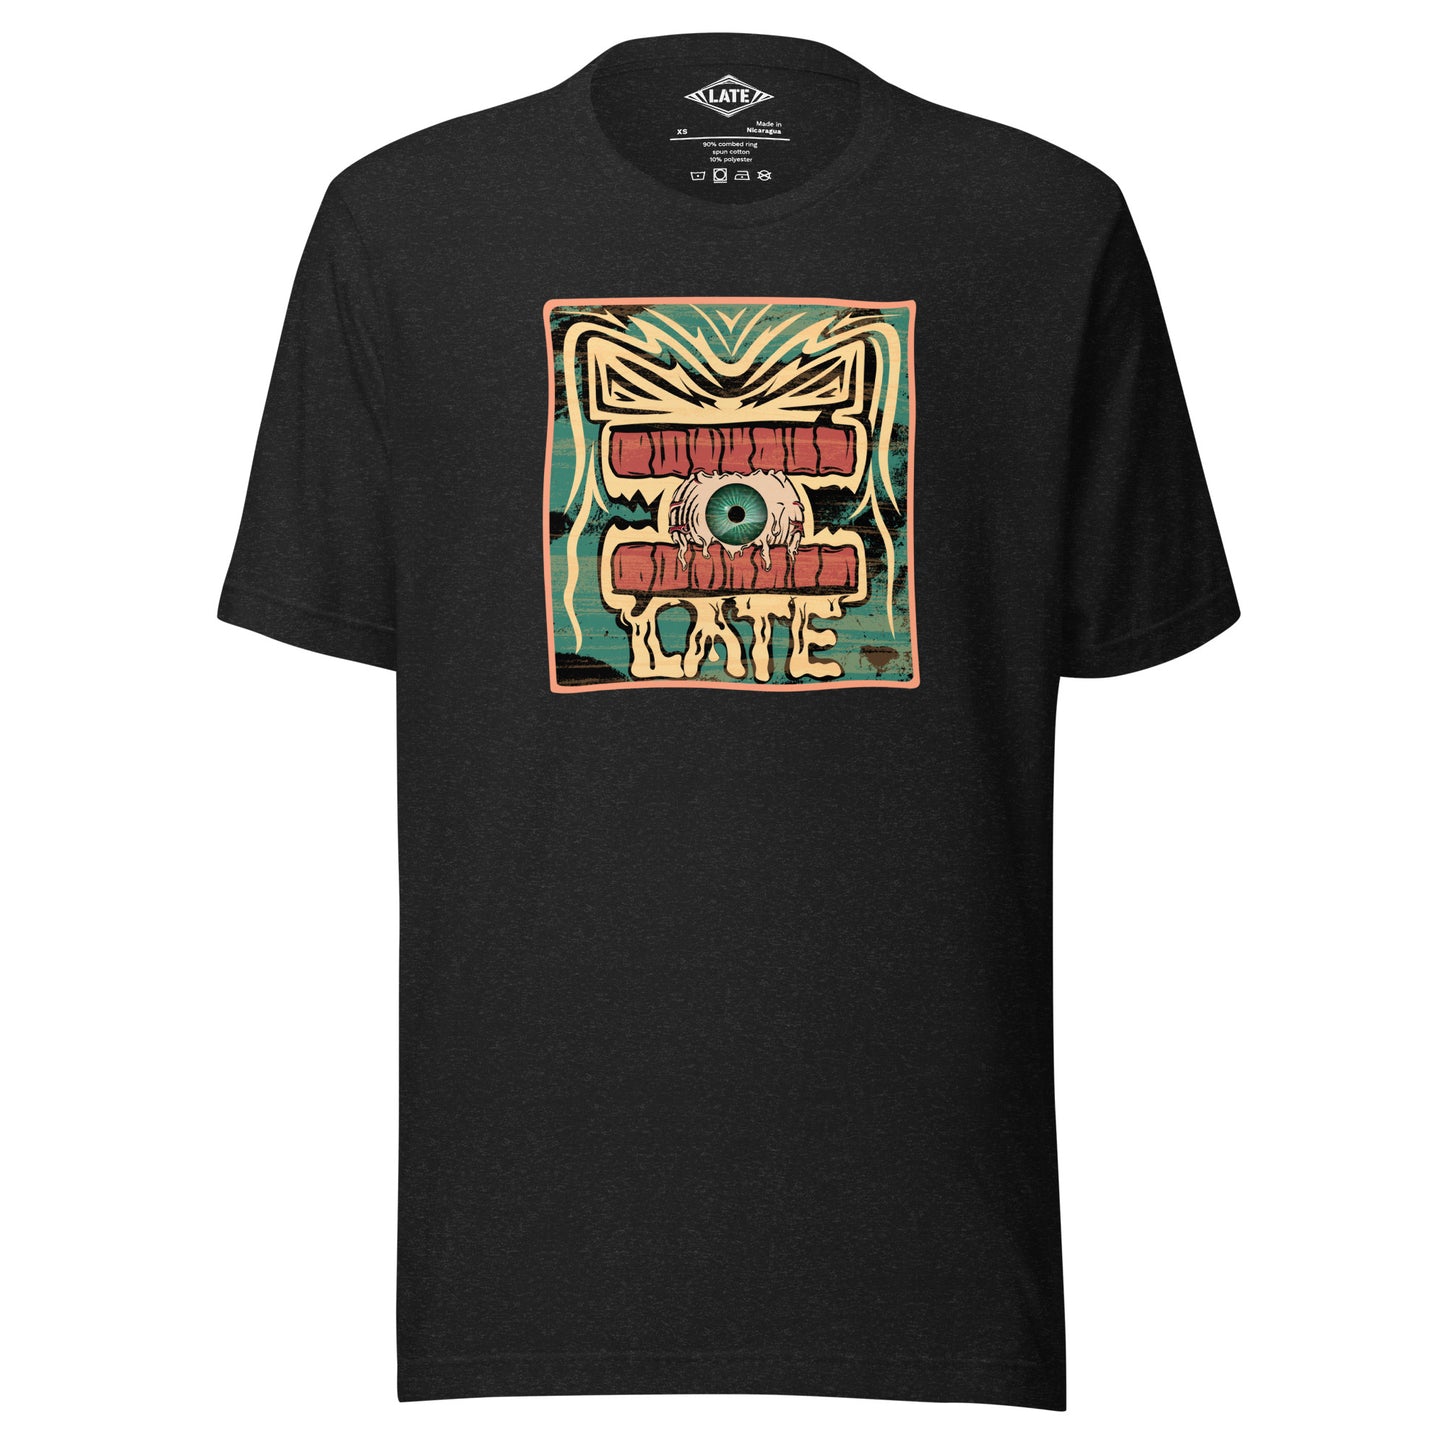 T-shirt rétro skateboarding, design couleur délavée, années 70,80, original dent et oeil skate, tee-shirt unisexe noir heather